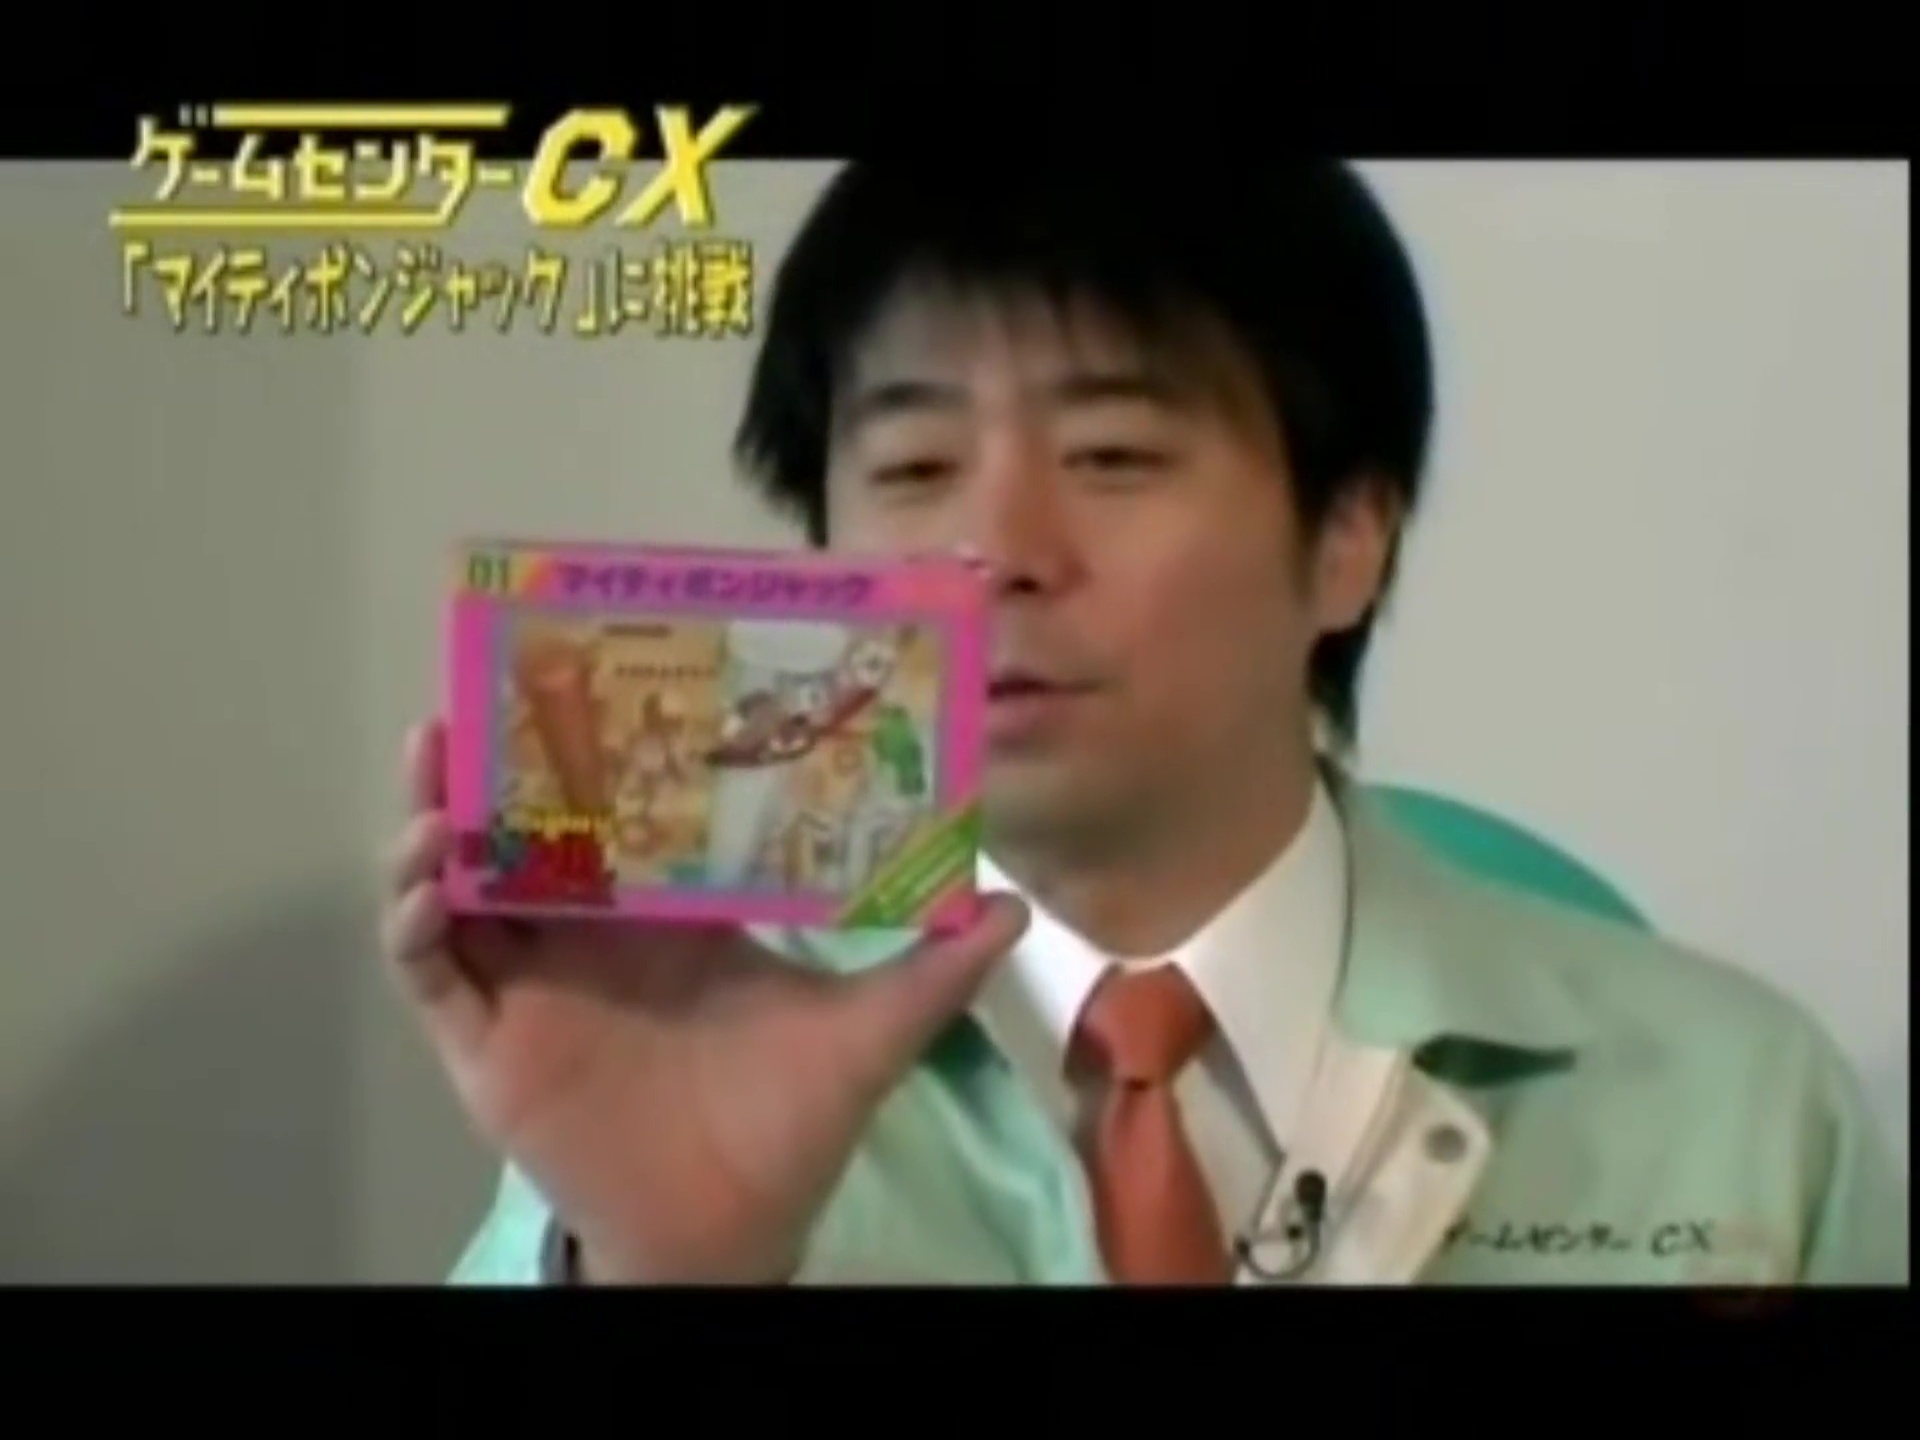 Gccx 39 マイティボンジャック ゲームセンターcx動画